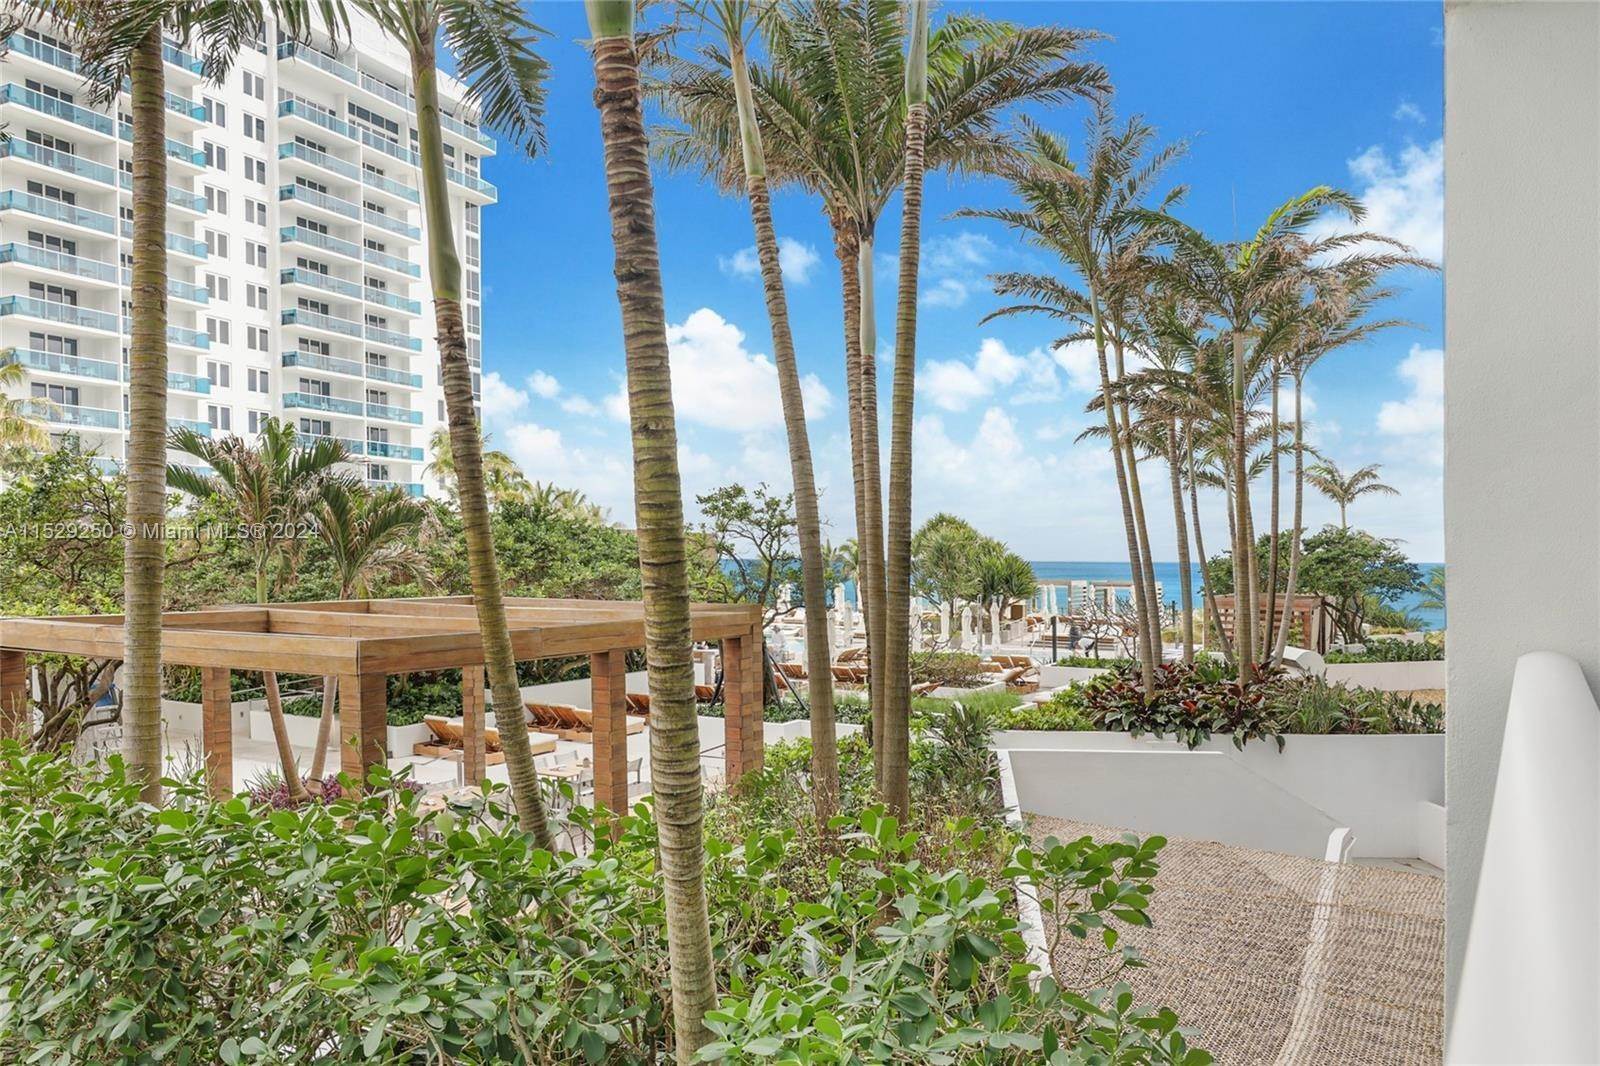 Condominium voor Verkoop op Mid Beach, Miami Beach, FL 33139